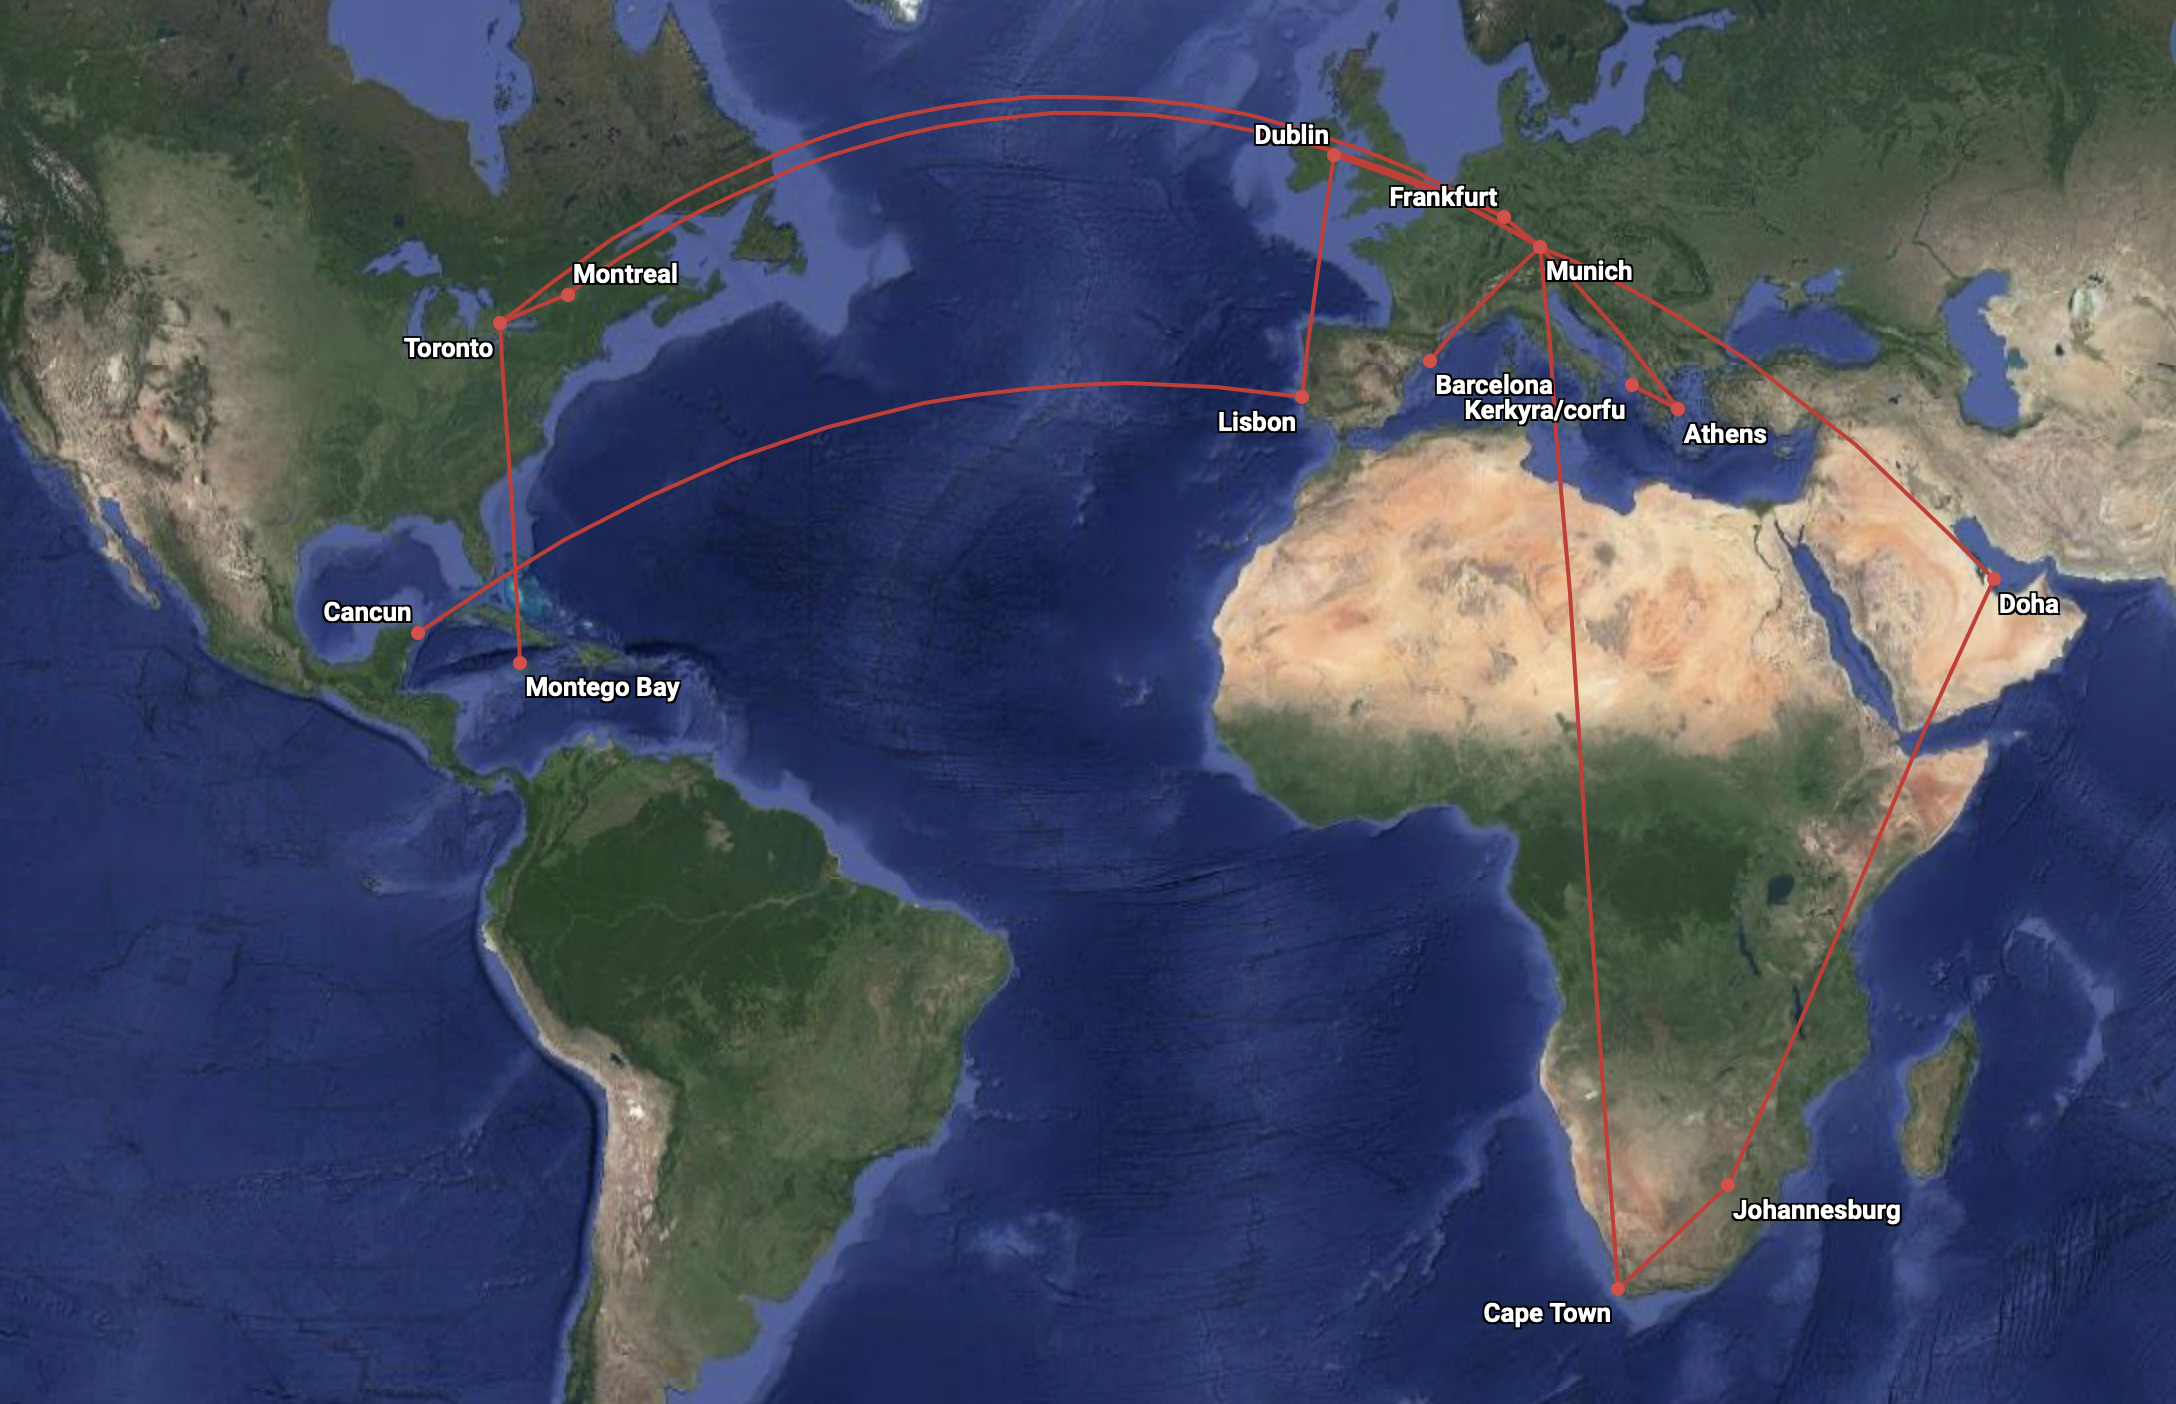 Mein Flugplan 2022 als Kind: Drei Kontinente, 23 Flüge und eineinhalbmal um die Welt!